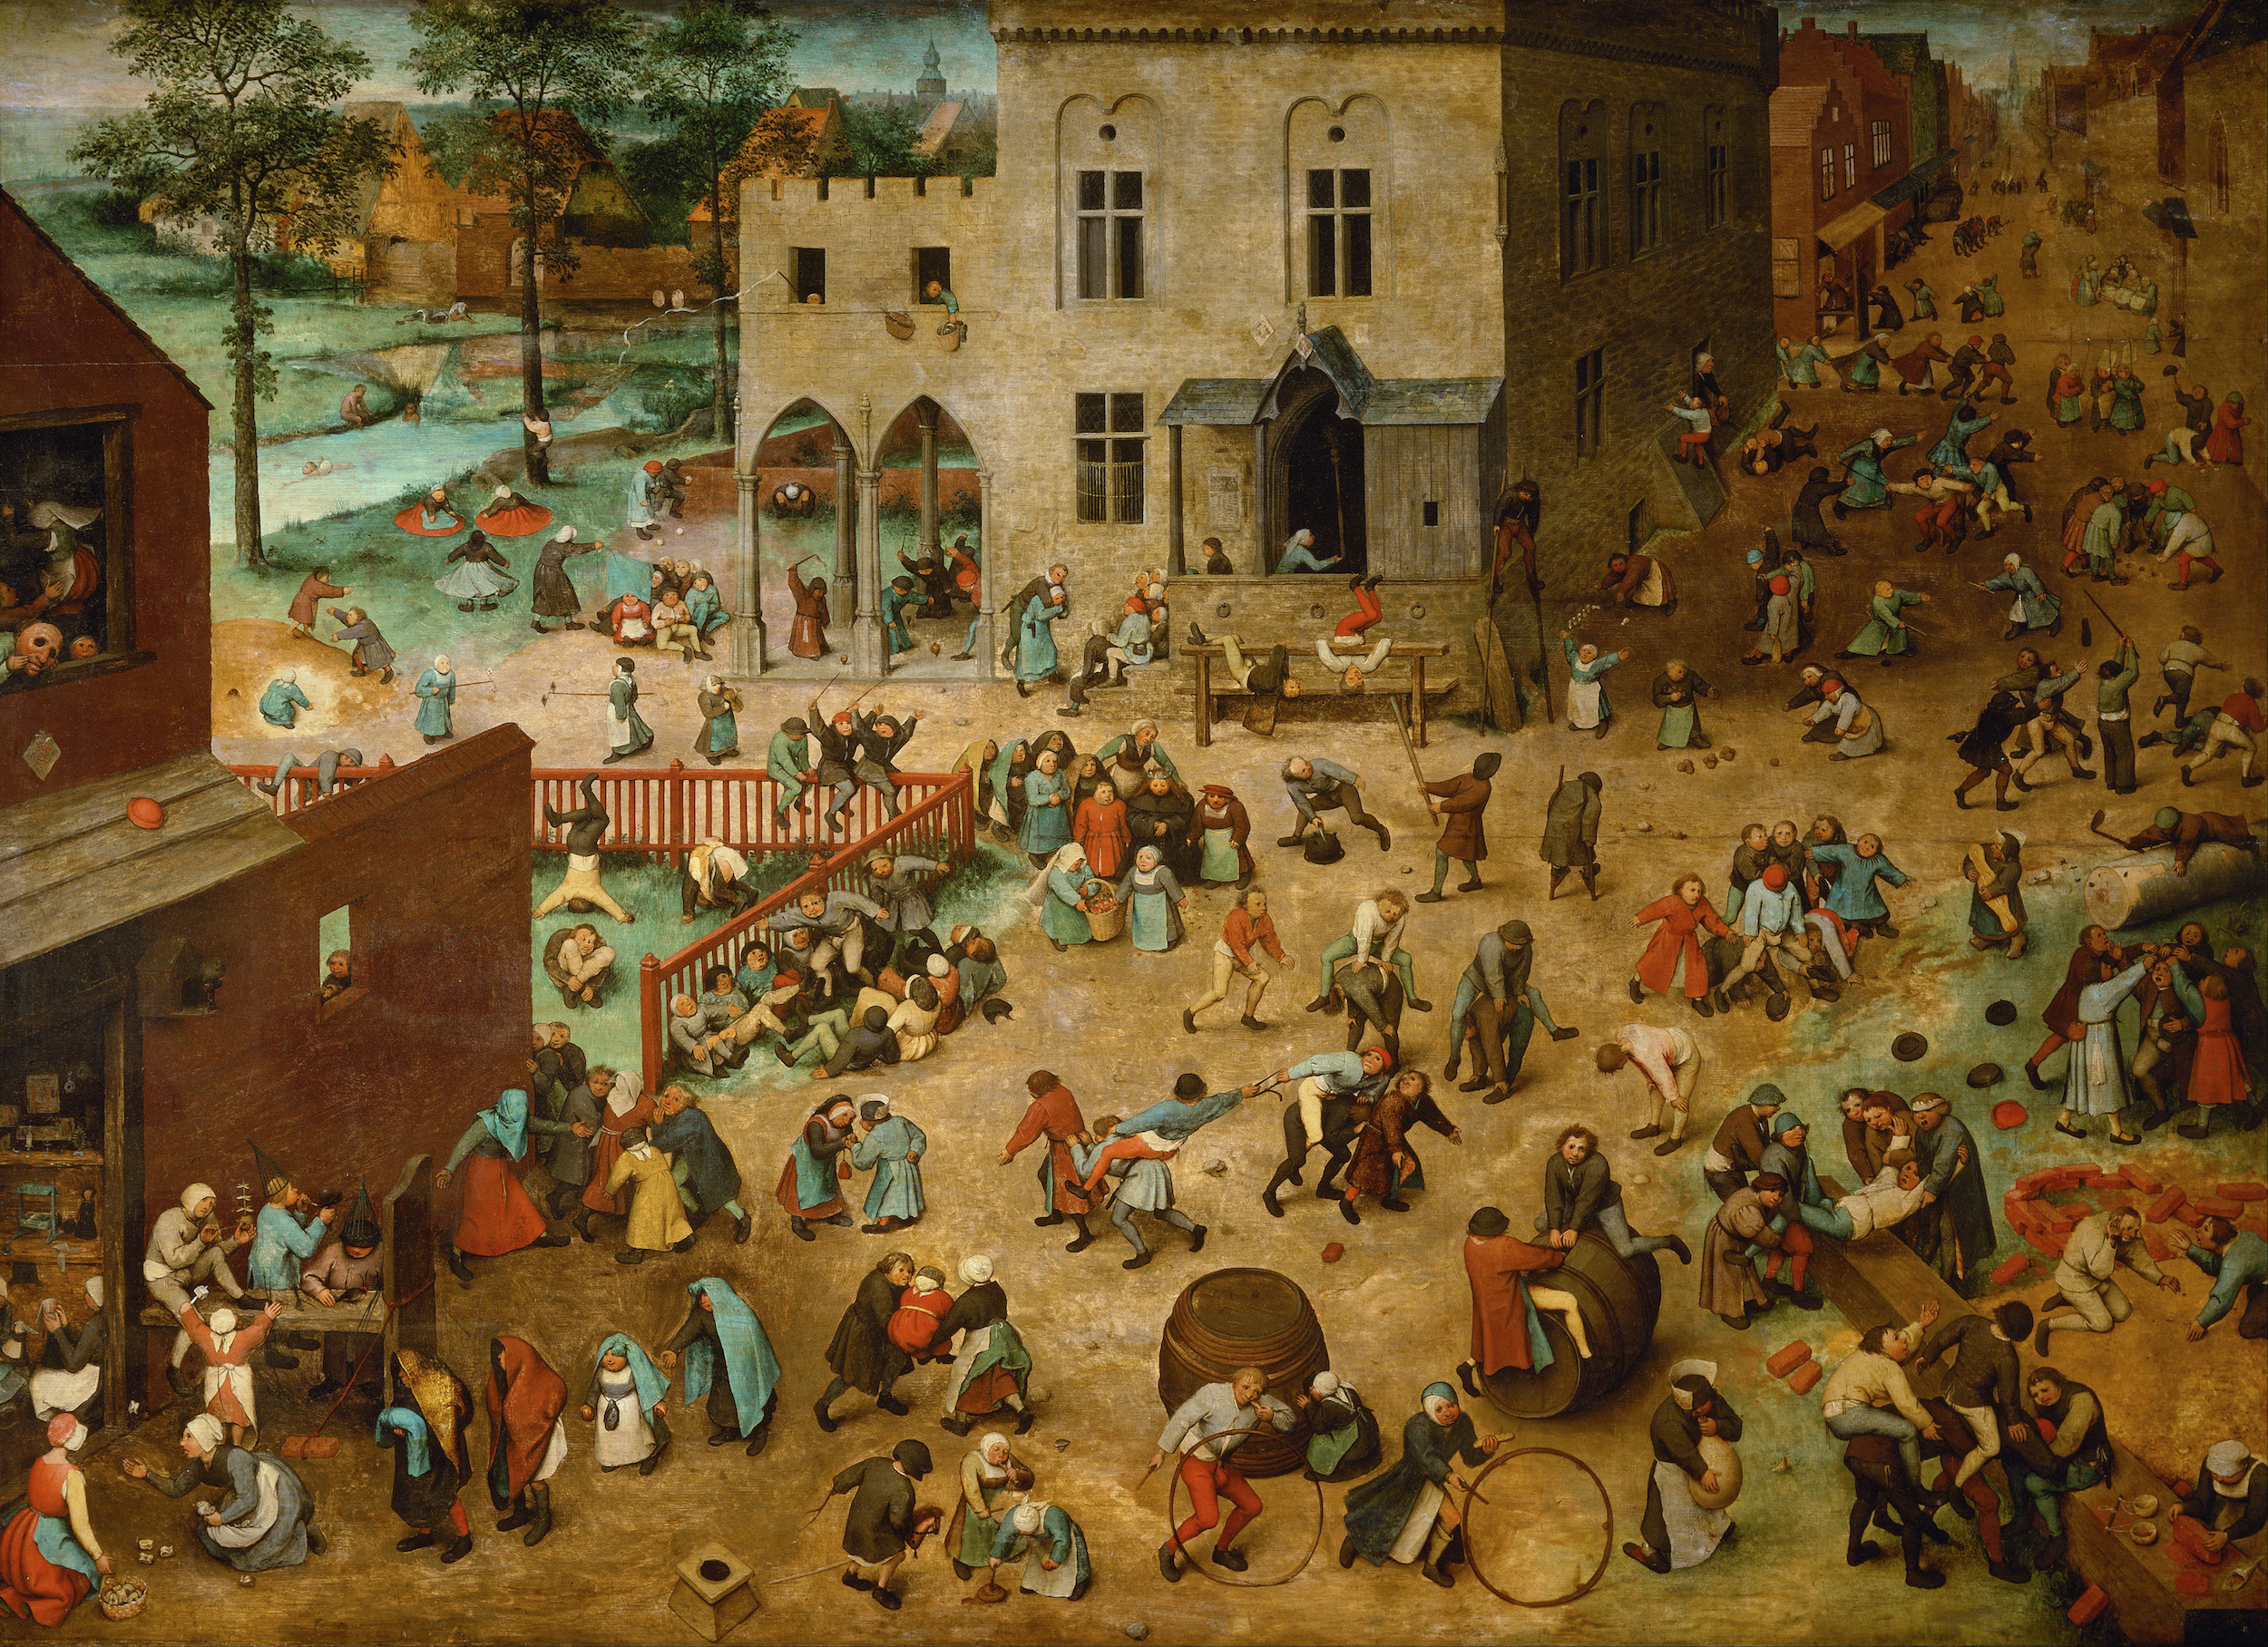 Jocurile copiilor by Pieter Bruegel the Elder - 1560 - 118 x 161 cm 